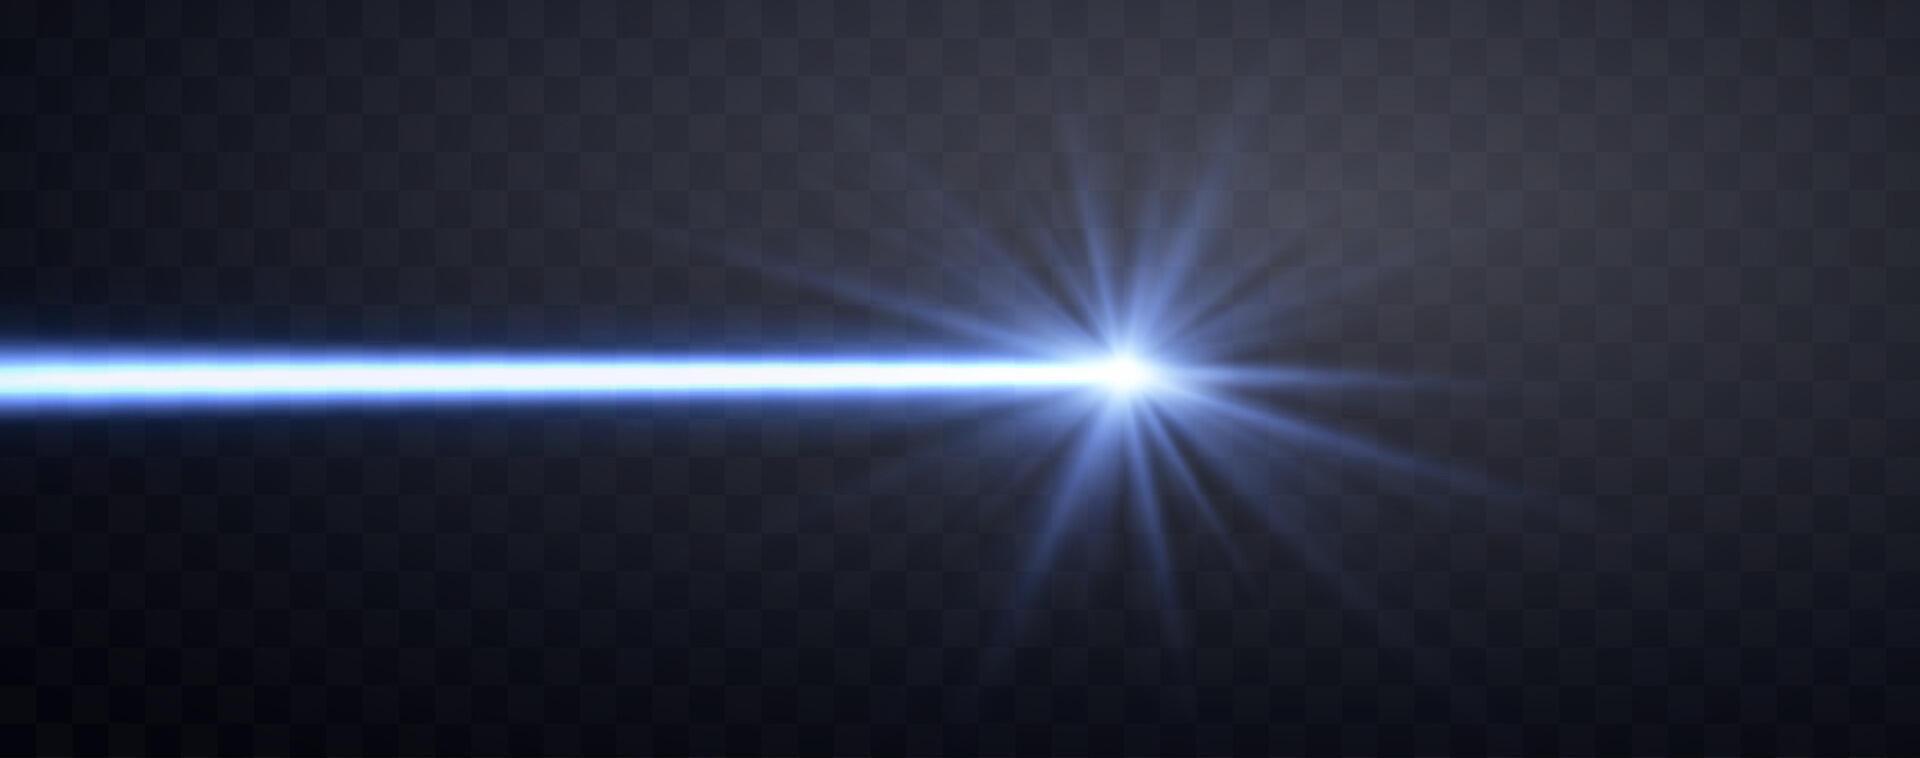 Blau horizontal Laser- Strahl. Neon- Linie, Präsentation Zeiger. Blau glühen Fackel Licht Wirkung. Vektor Illustration. isoliert auf dunkel Hintergrund.